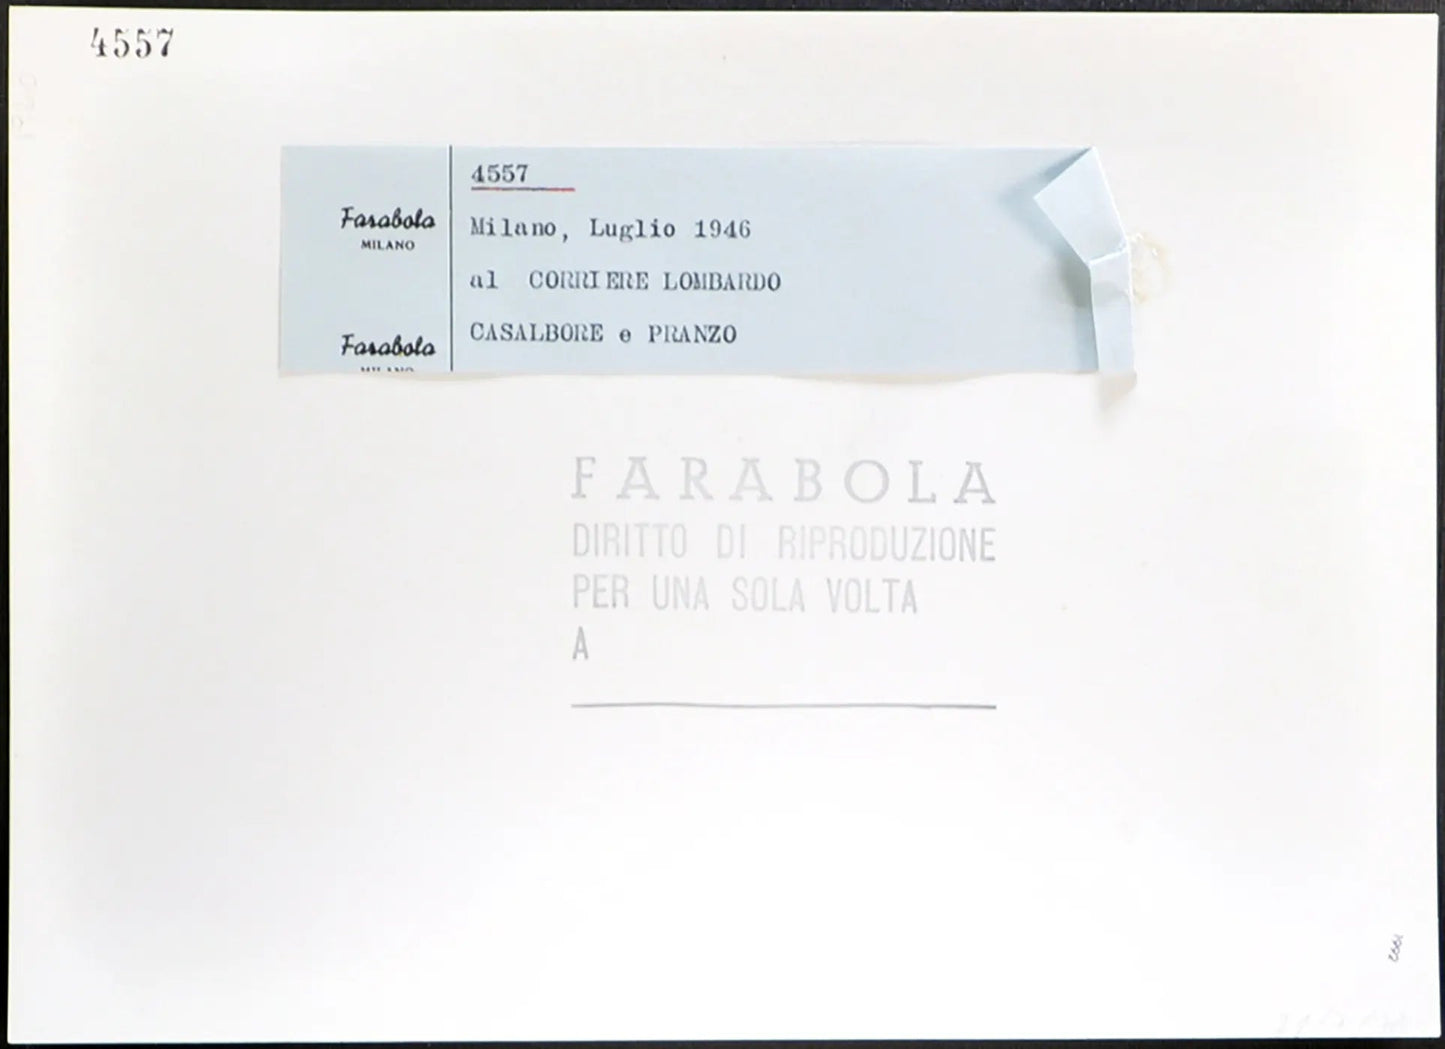 Milano Redazione Corriere Lombardo 1946 Ft 1992 - Stampa 21x27 cm - Farabola Stampa ai sali d'argento